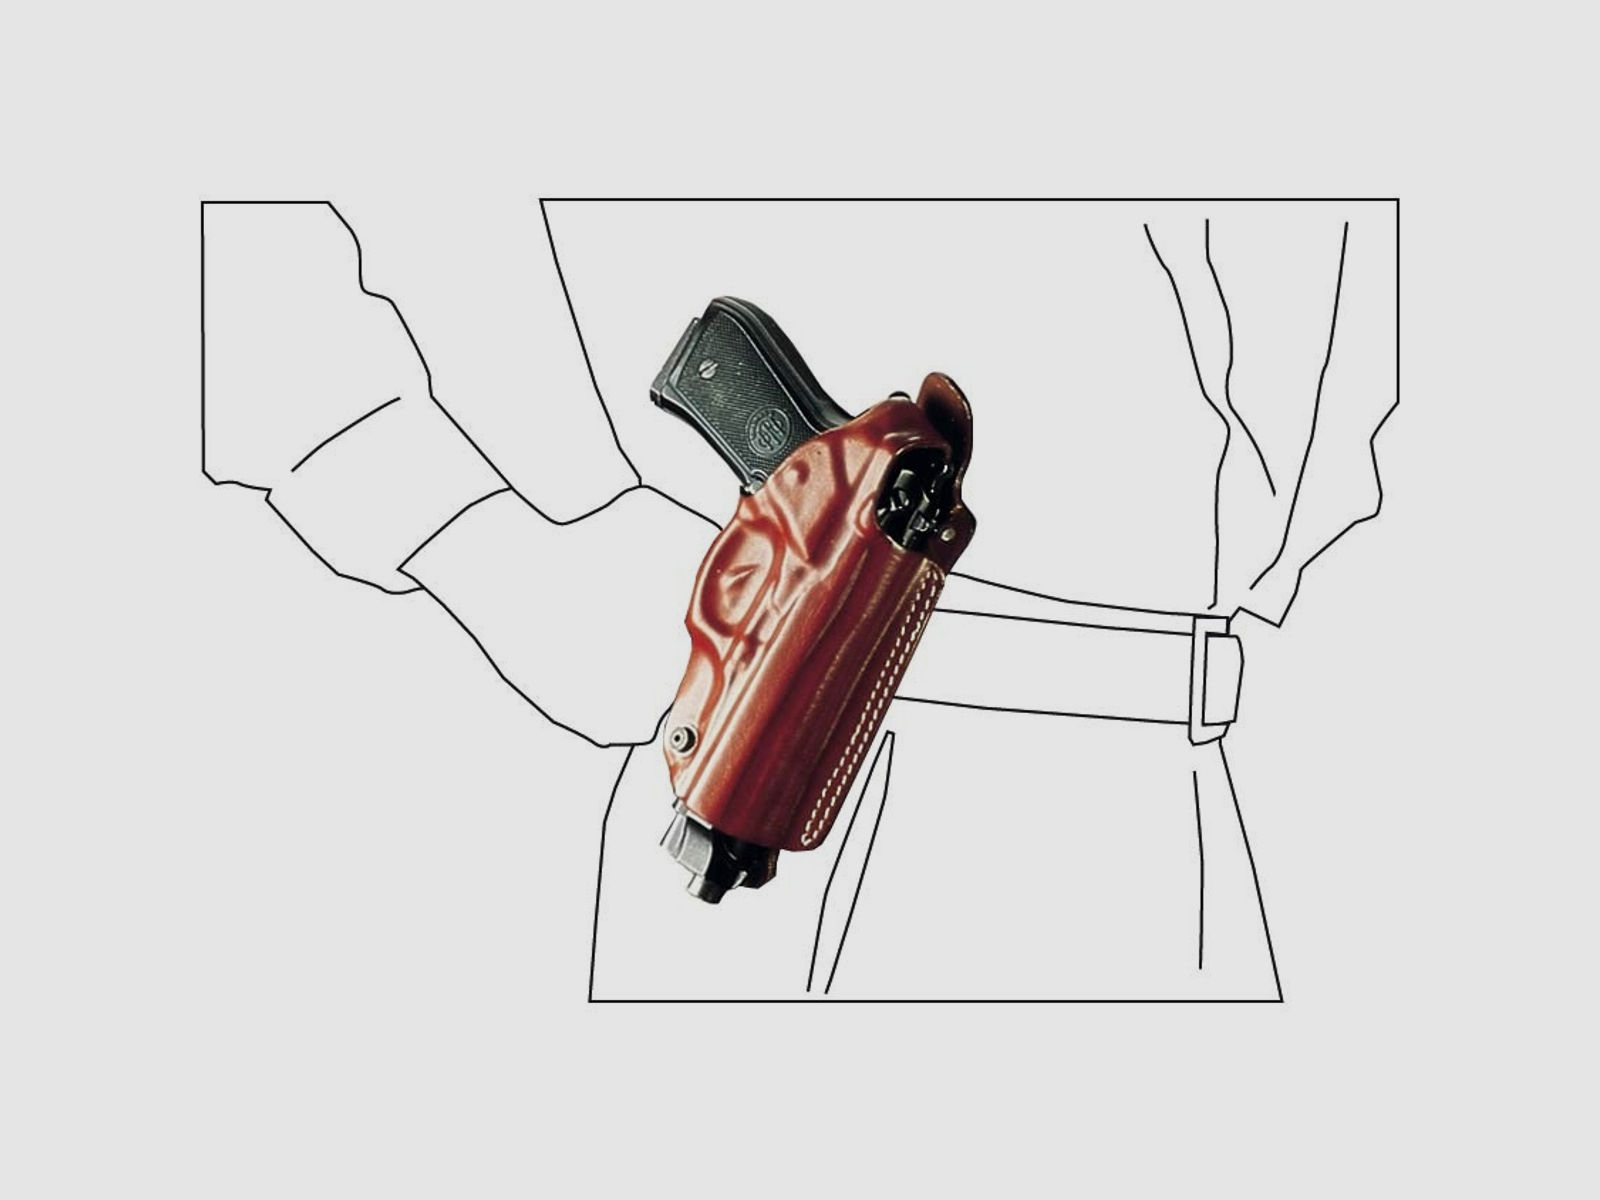 Mehrzweck-Schulterholster/Gürtelholster "Miami" Glock 43/43X/48, Walther P22/P22Q-Braun-Linkshänder